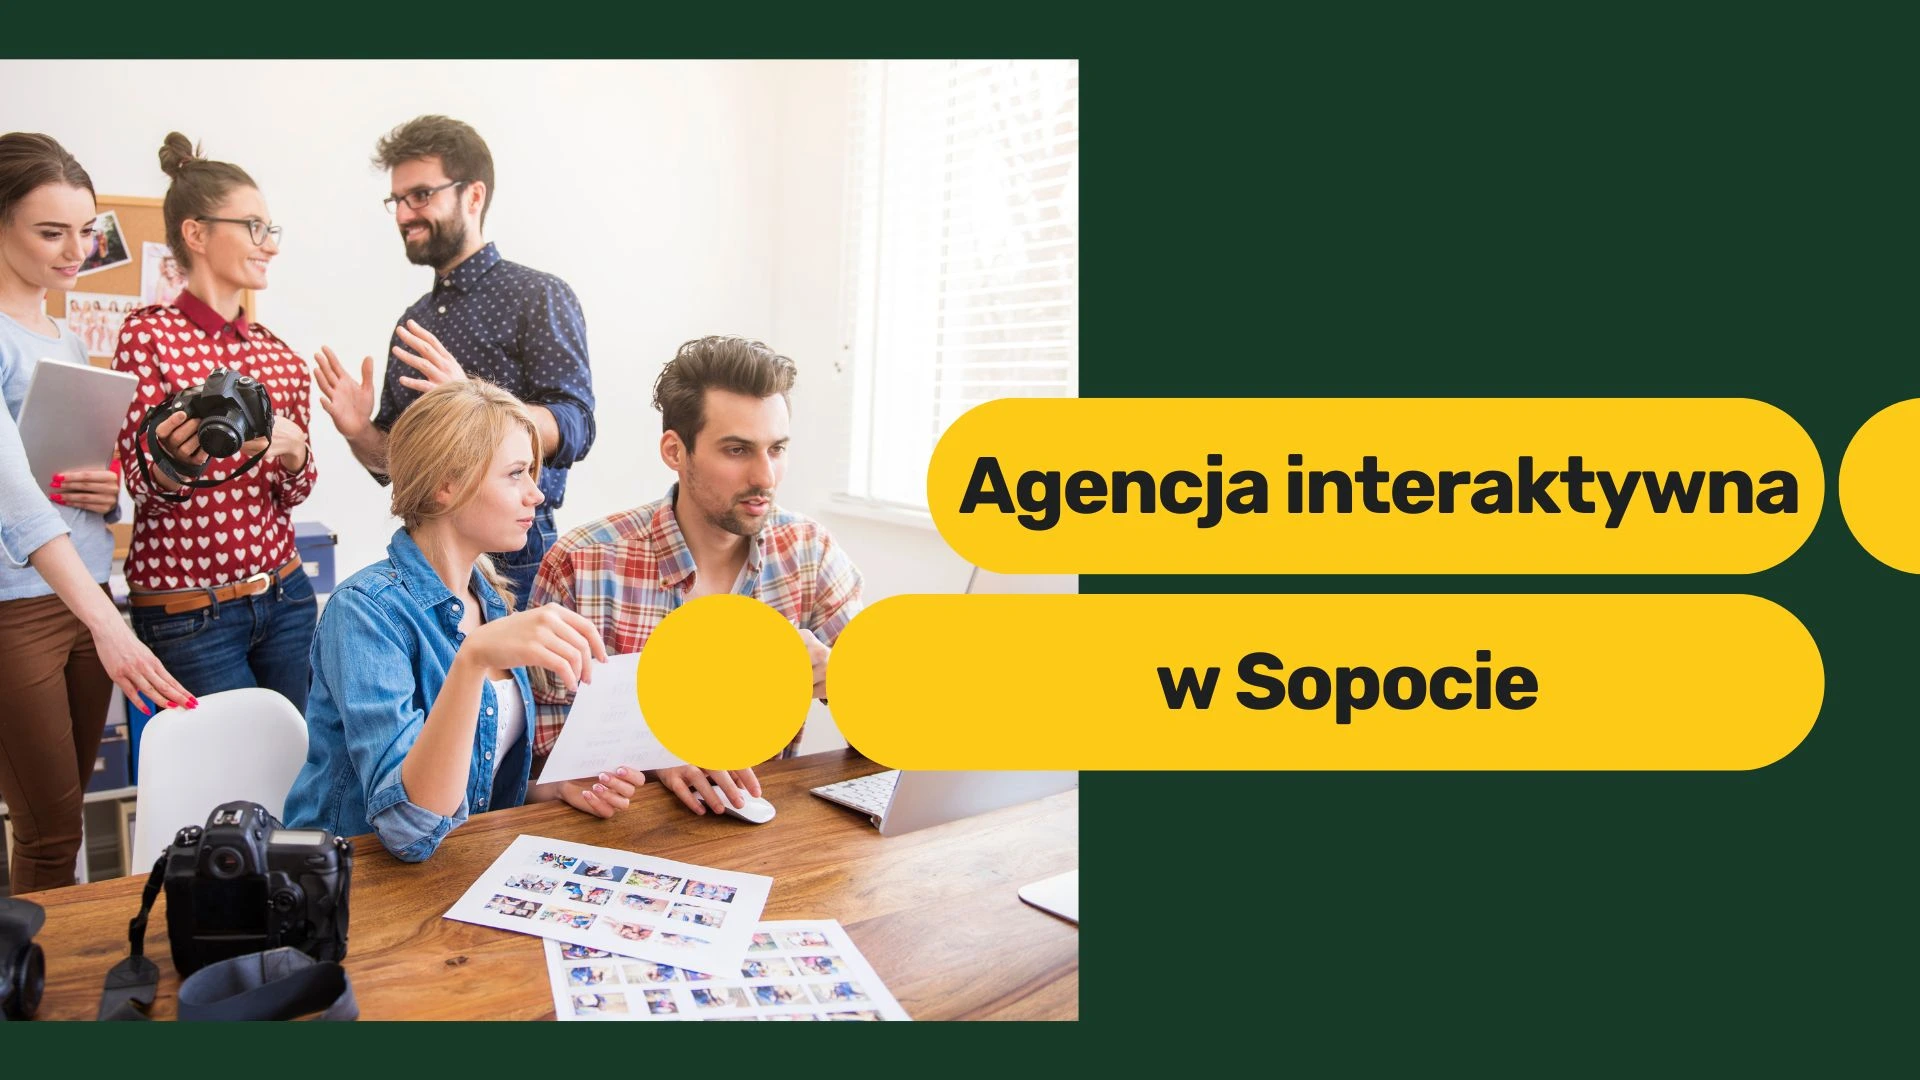 Agencja interaktywna w Sopocie